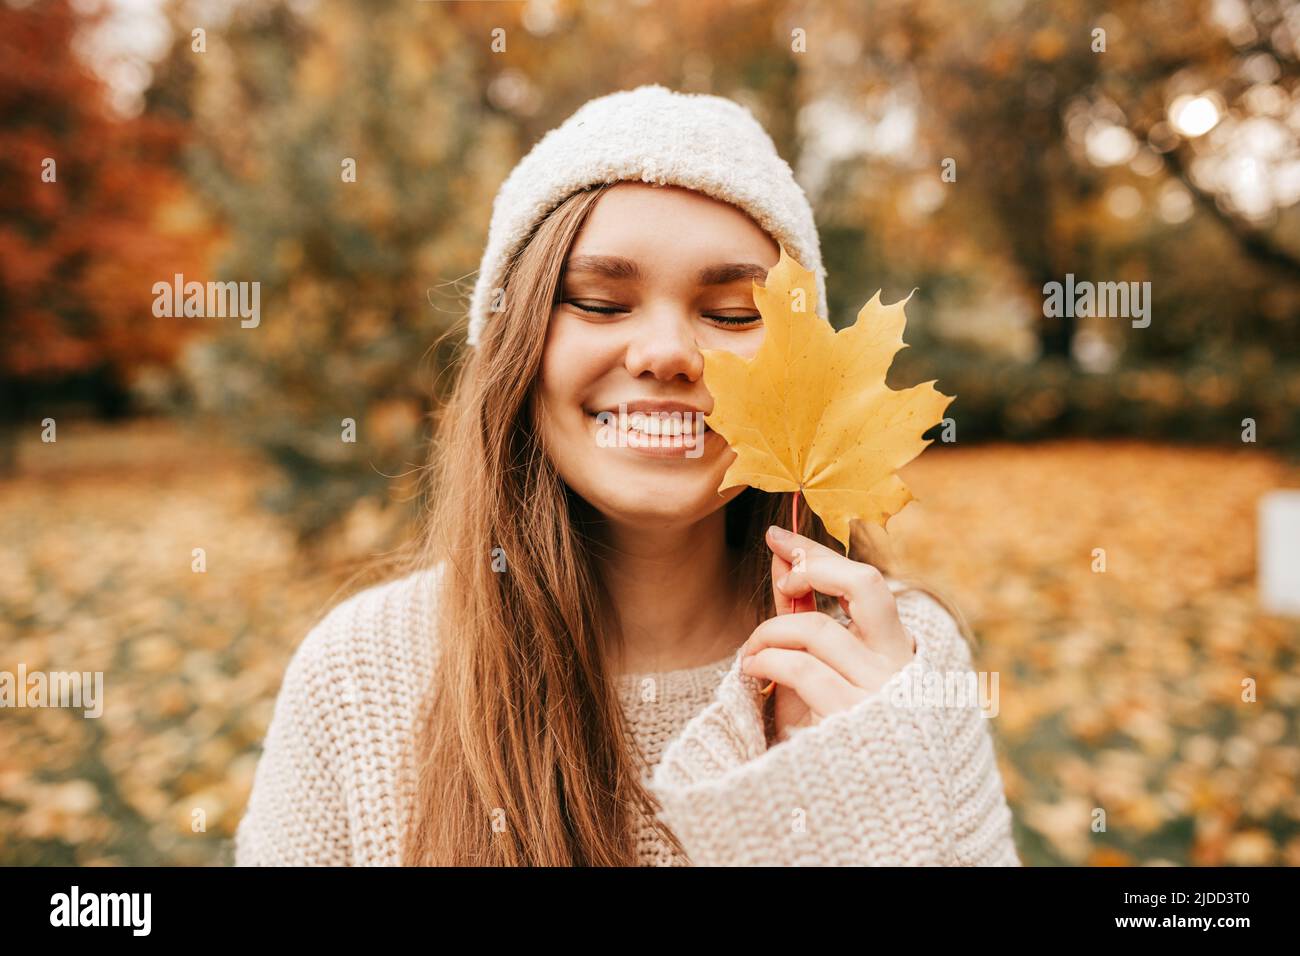 Charmante jeune femme en bonnet tricoté et chandail sourit joyeusement sur la promenade dans le parc d'automne, tenant la feuille d'érable jaune devant elle. Profitez de l'automne Banque D'Images